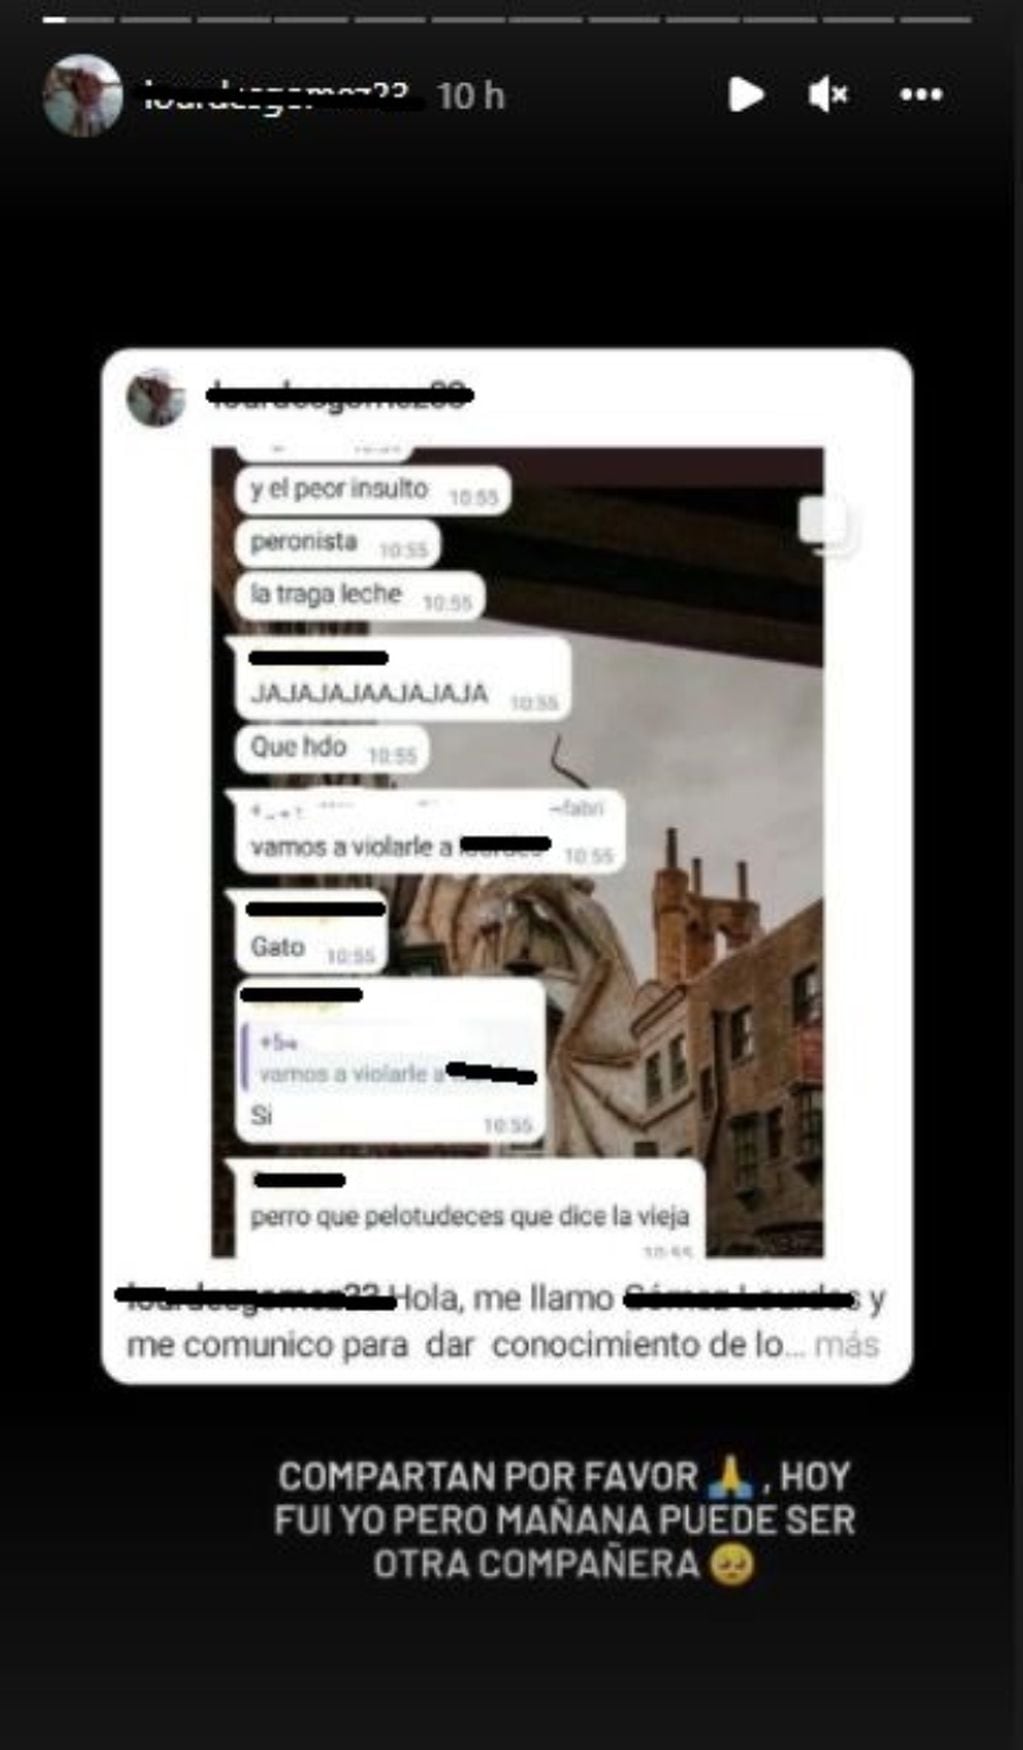 La joven compartió las capturas de pantalla a través de su cuenta de Instagram.